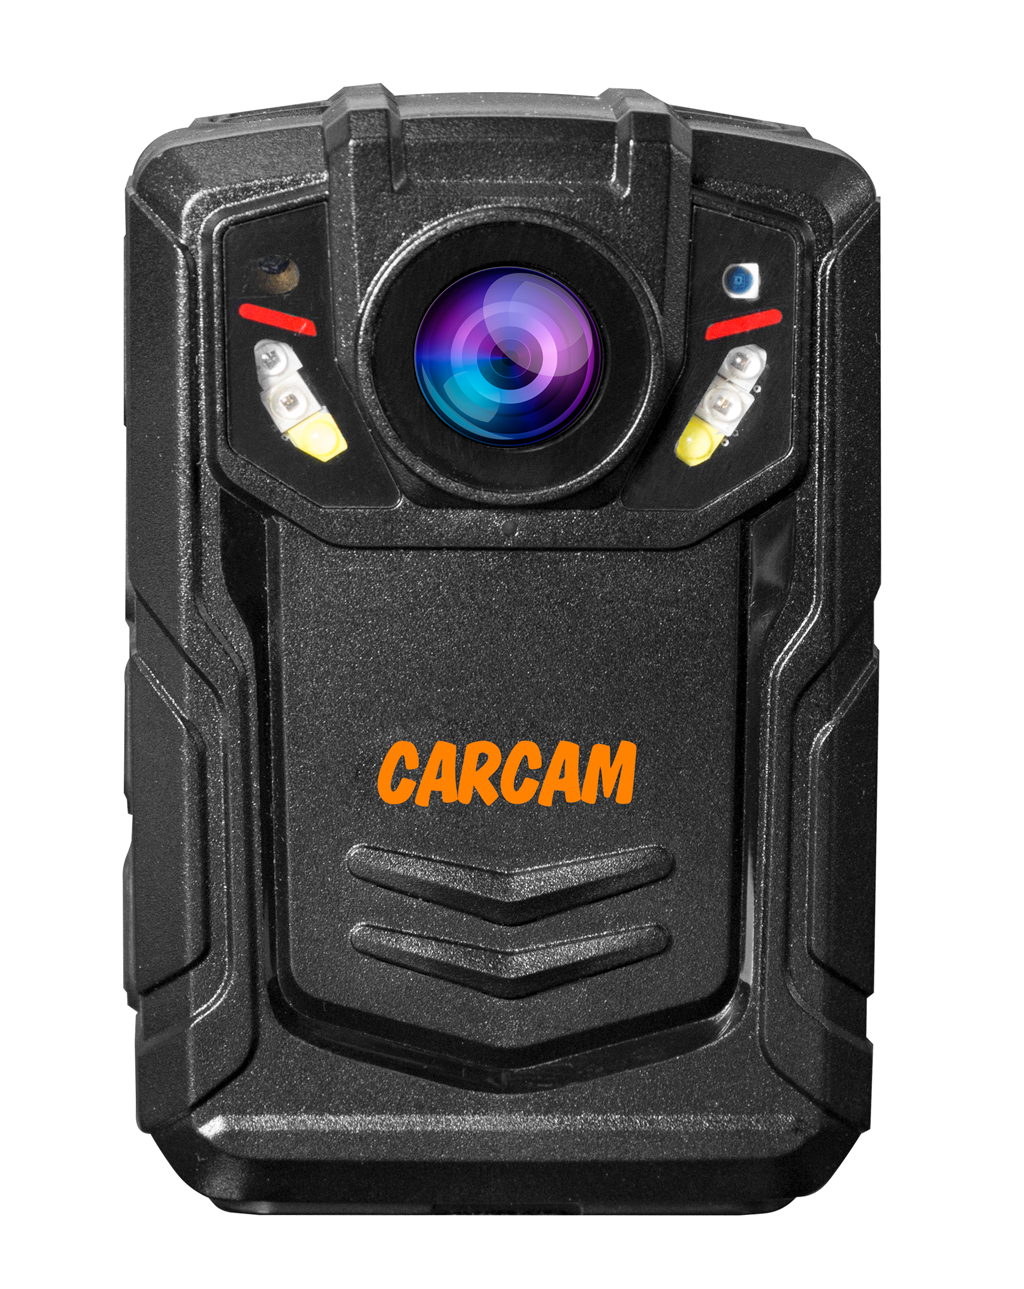 Персональный видеорегистратор CARCAM COMBAT 2S PRO 64GB персональный quad hd видеорегистратор для работников технических объектов carcam combat 2s prof 256gb